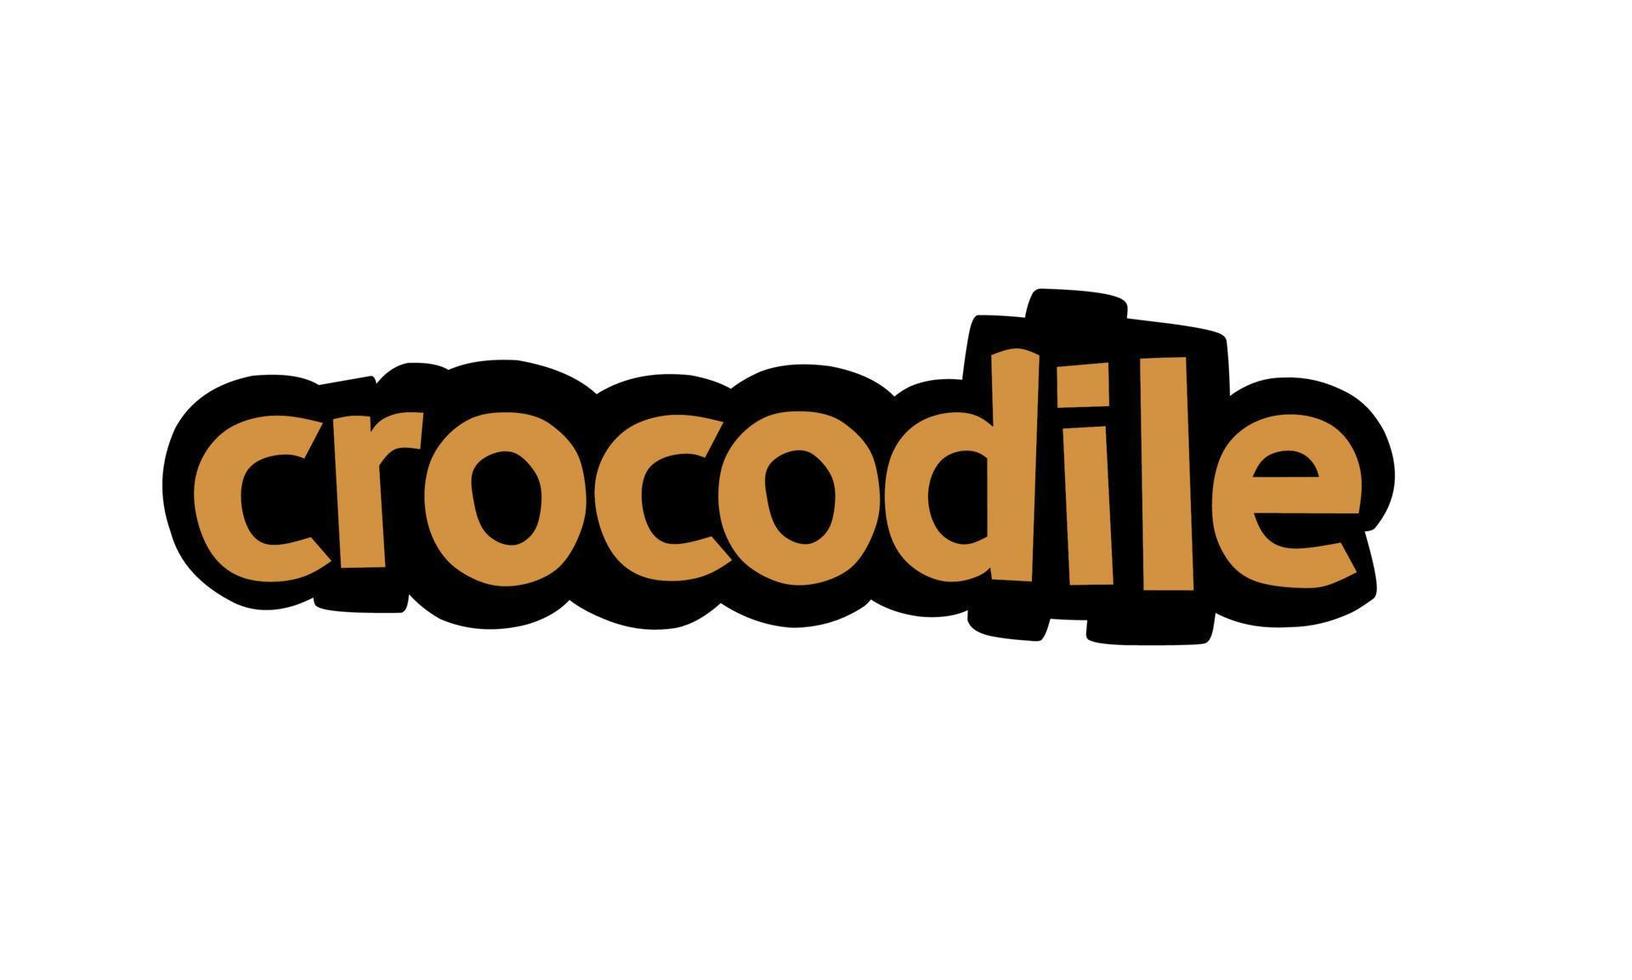 conception vecteur écriture crocodile sur fond blanc